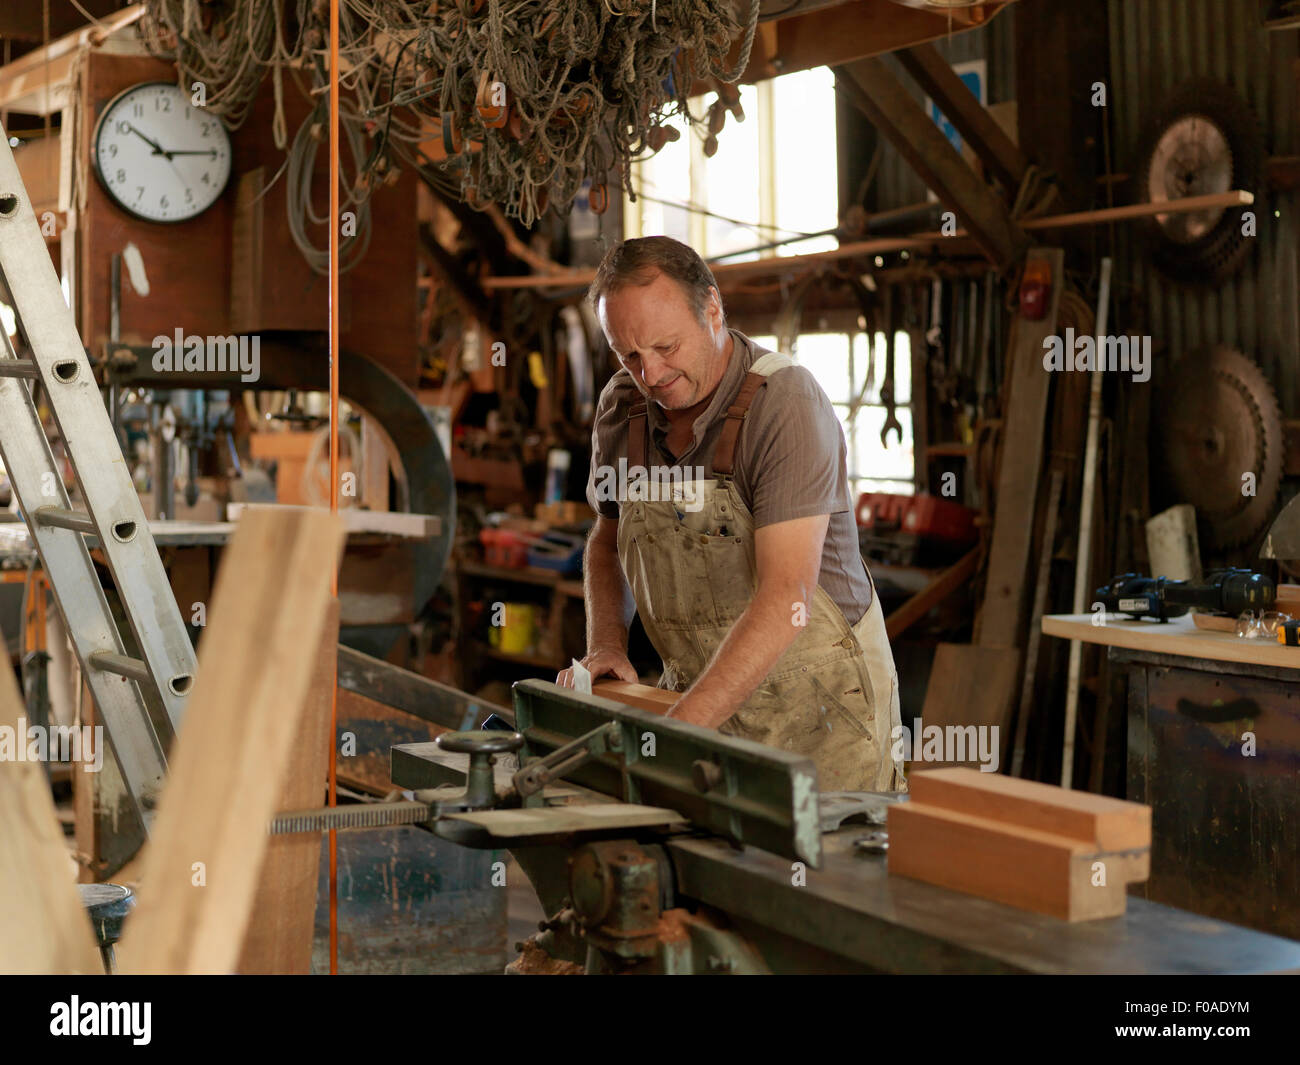 Boat builder in workshop Stock Photo